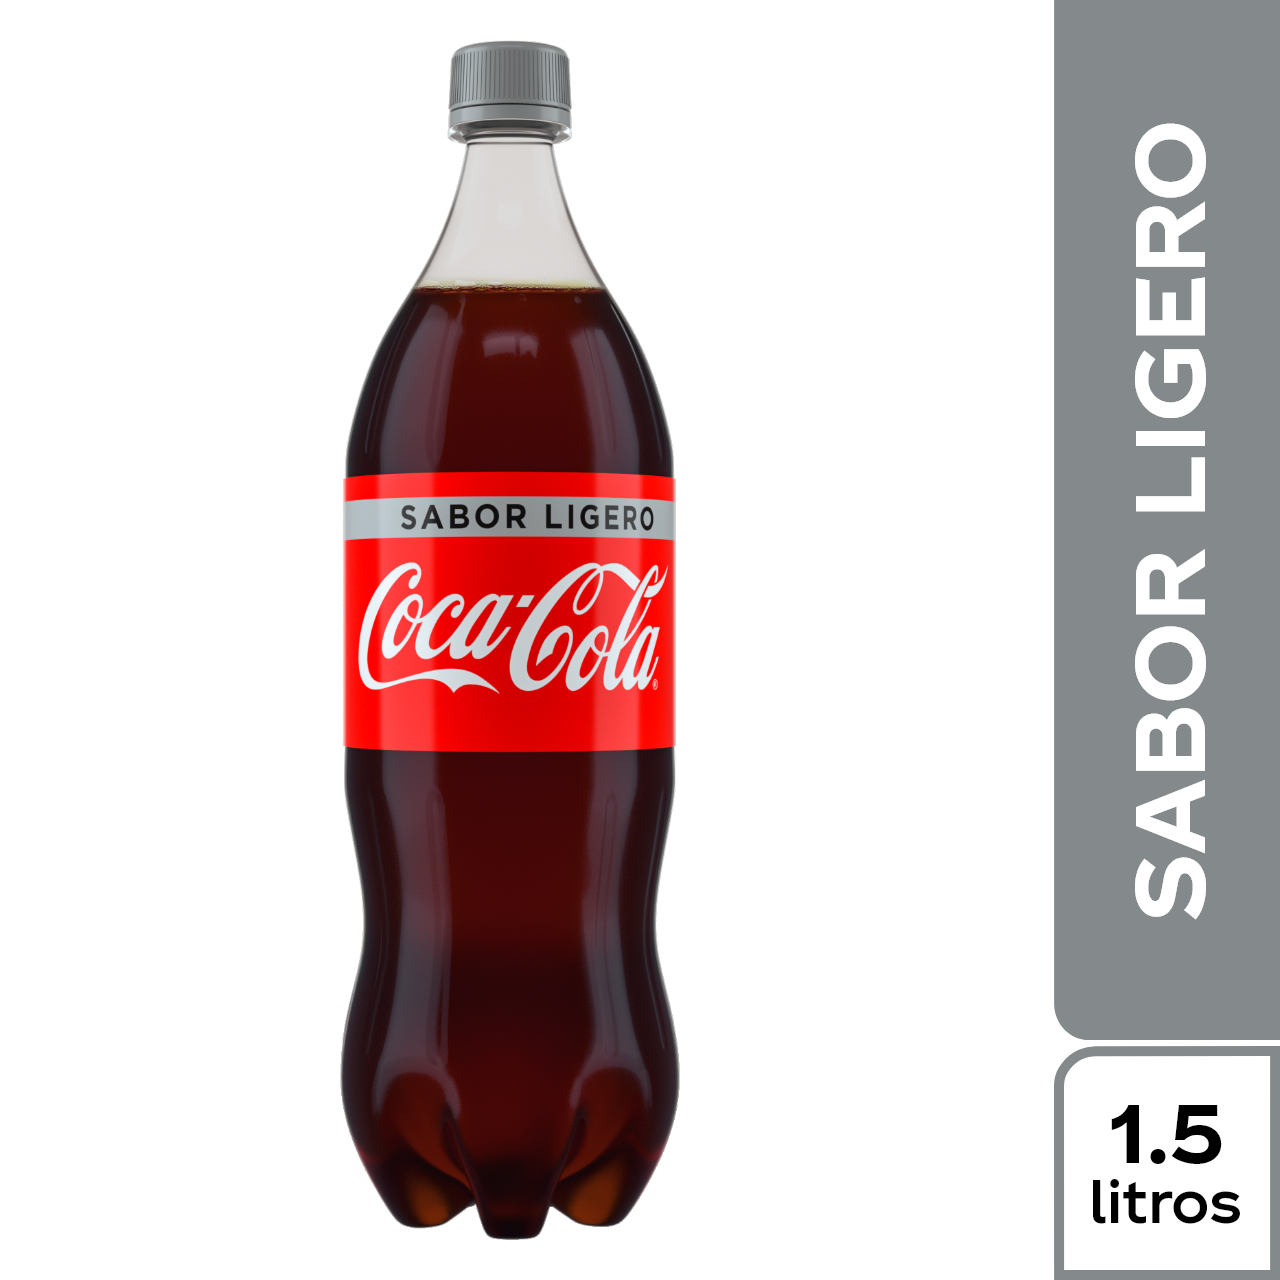 Coca-Cola Sabor Ligero 1.5 l